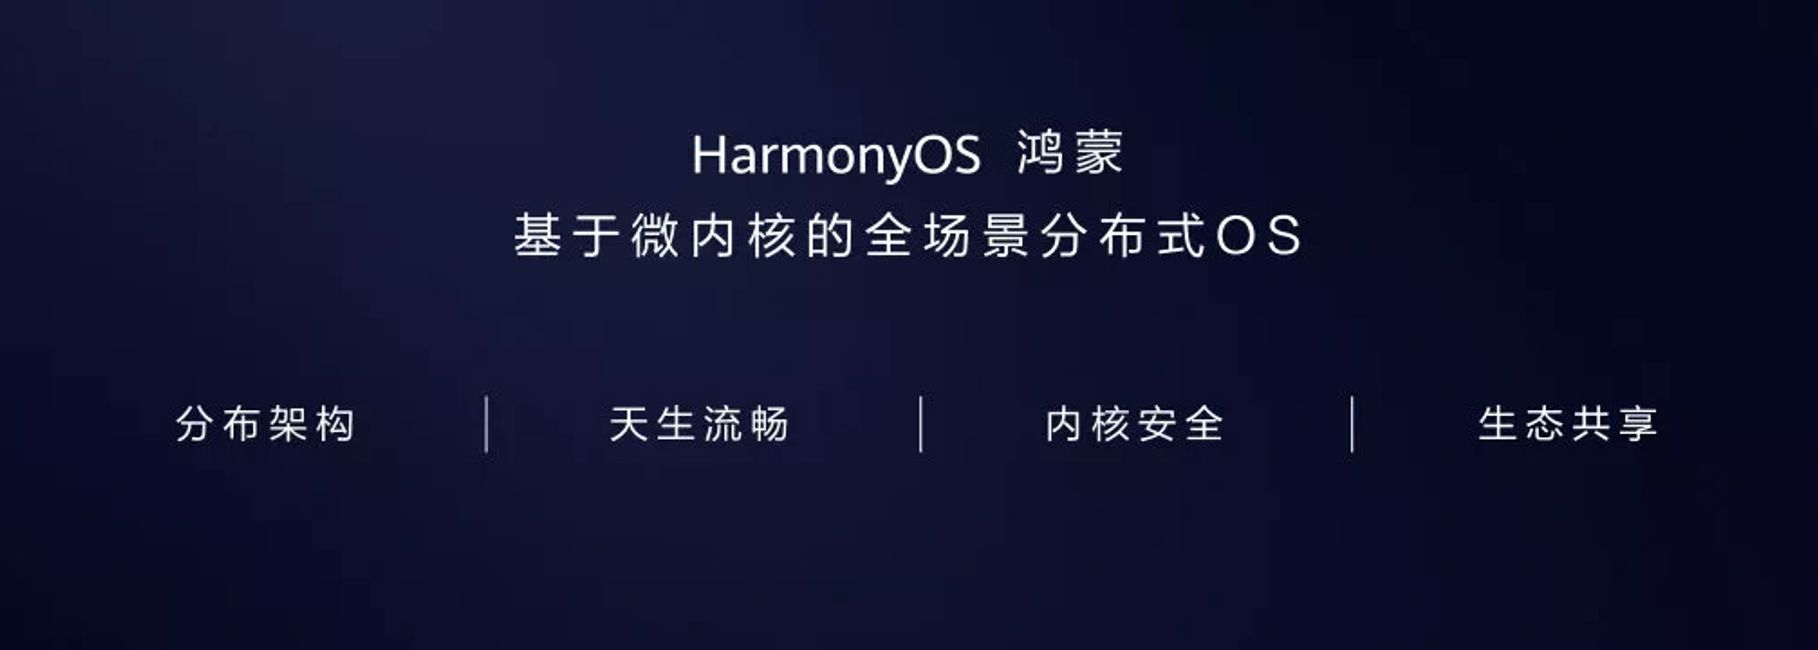  HarmonyOS Chinese documentation2